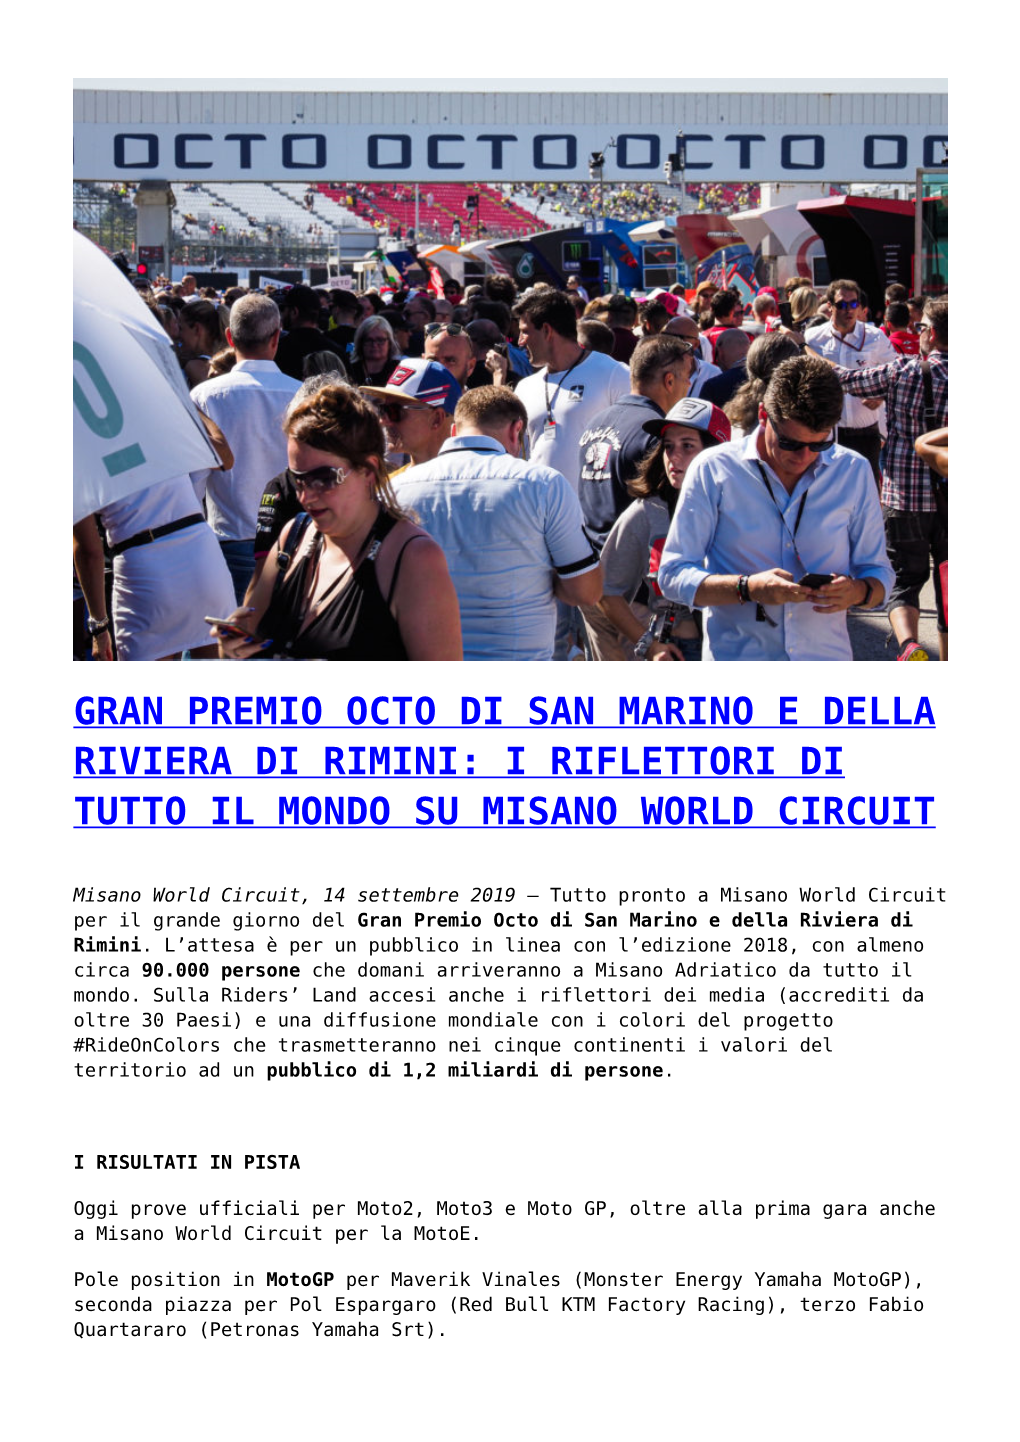 Gran Premio Octo Di San Marino E Della Riviera Di Rimini: I Riflettori Di Tutto Il Mondo Su Misano World Circuit